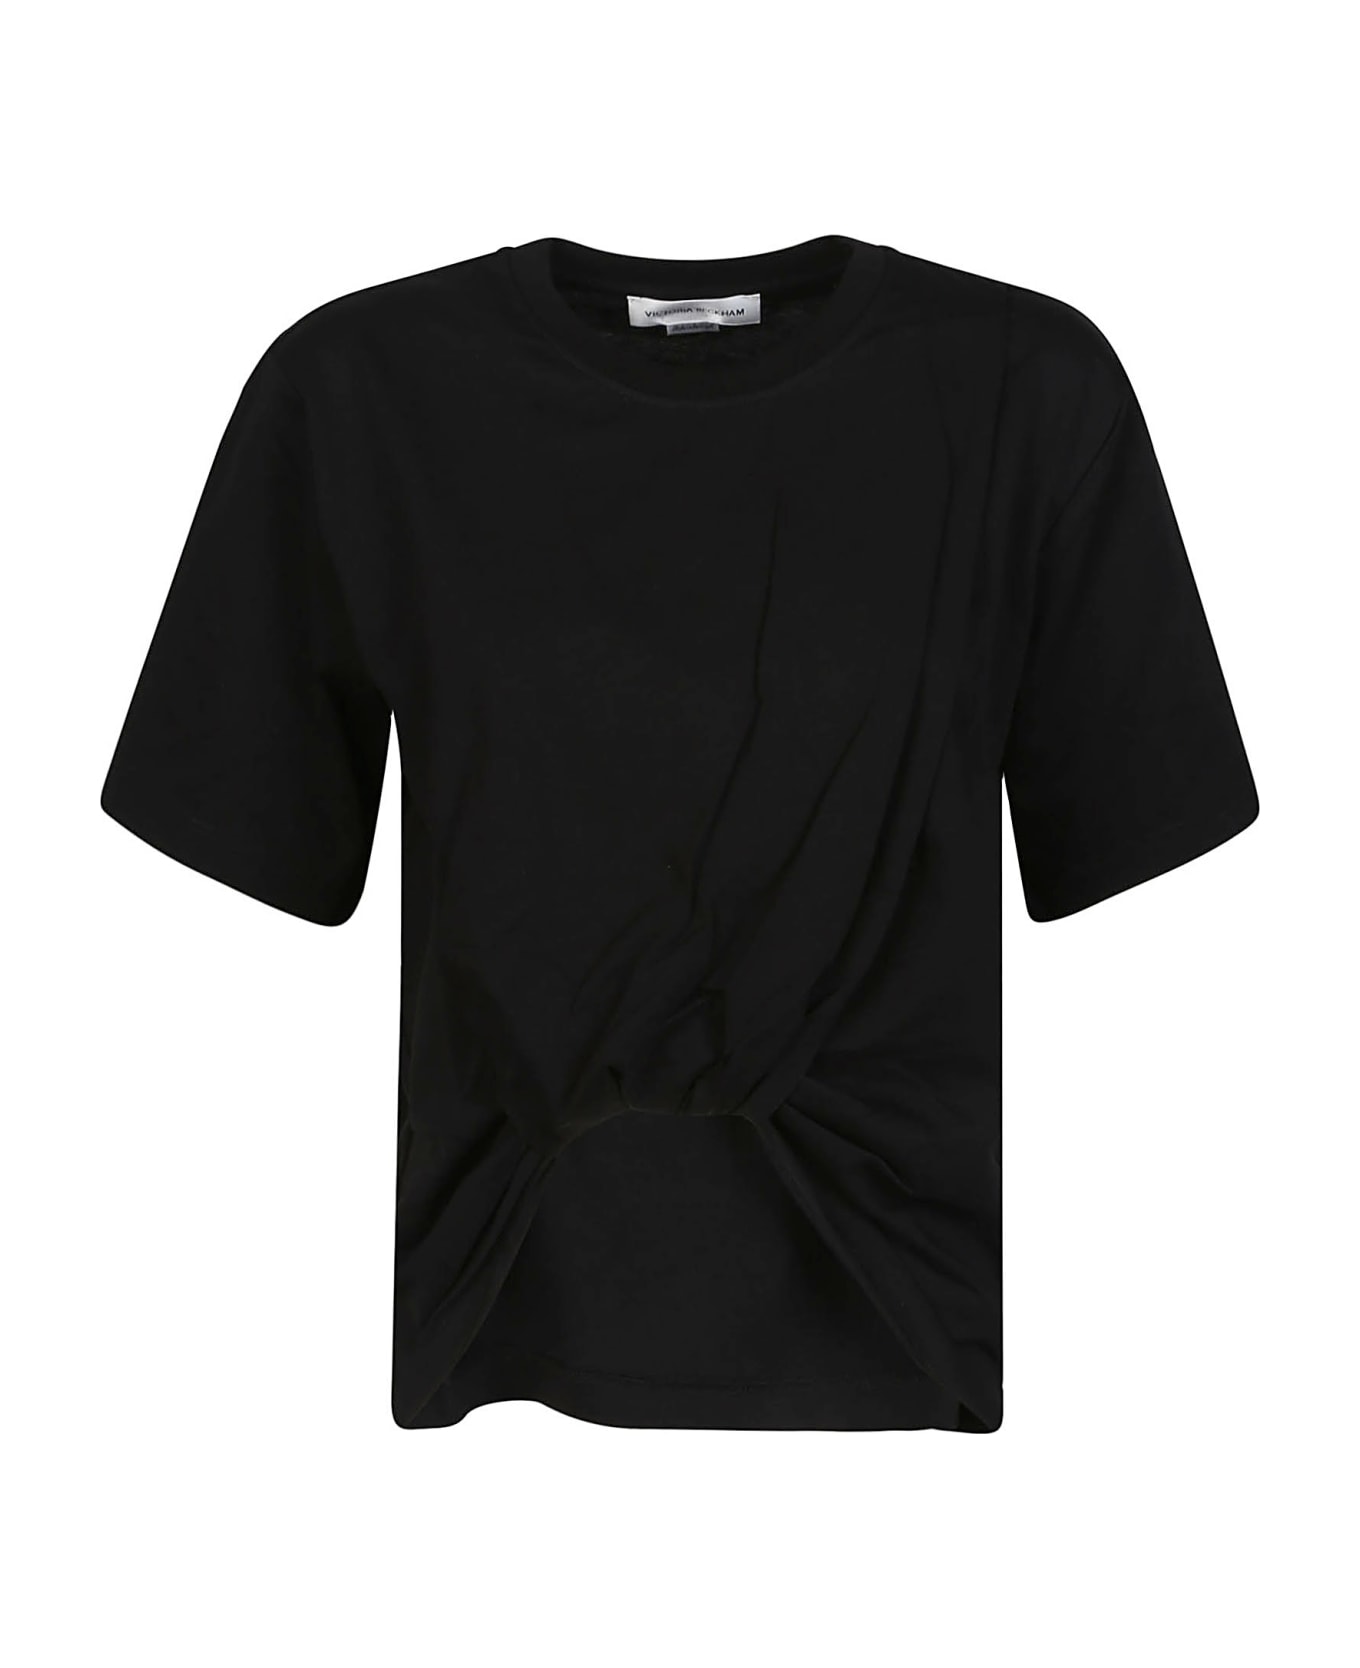 Victoria Beckham Twist Front T-shirt - Black